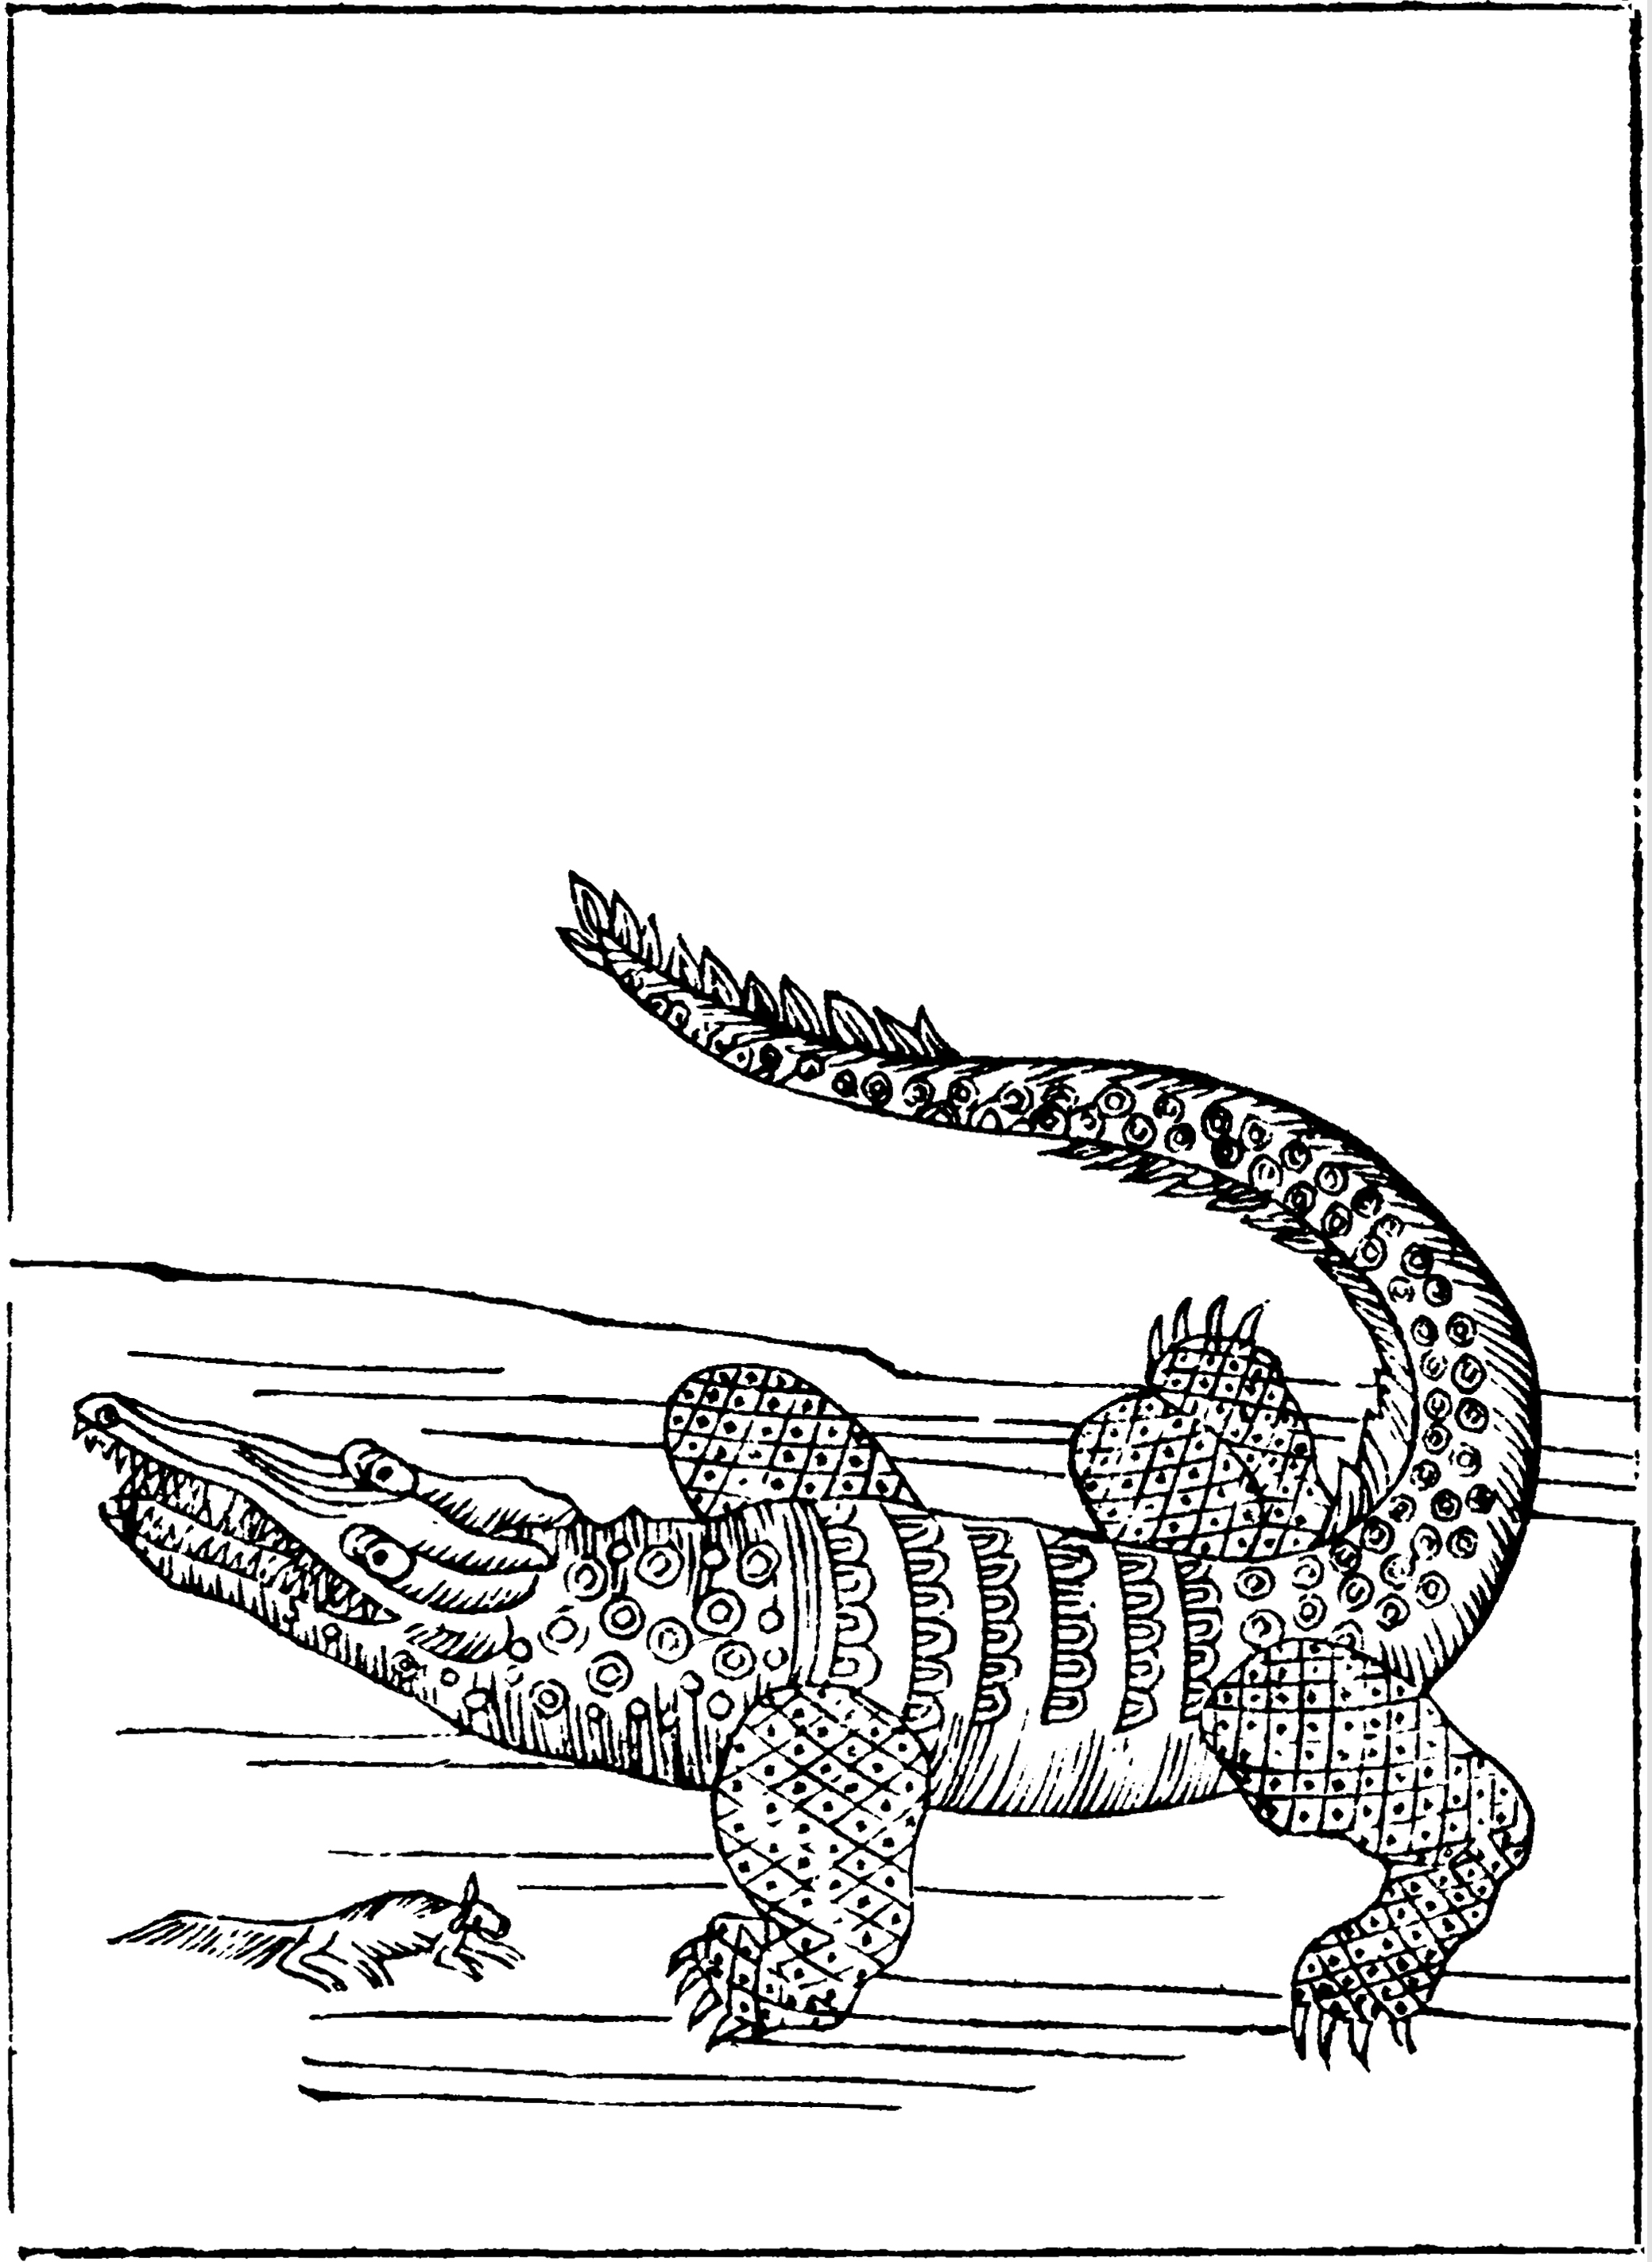 历史上曾活跃在中国的鳄鱼主要有扬子鳄和湾鳄.